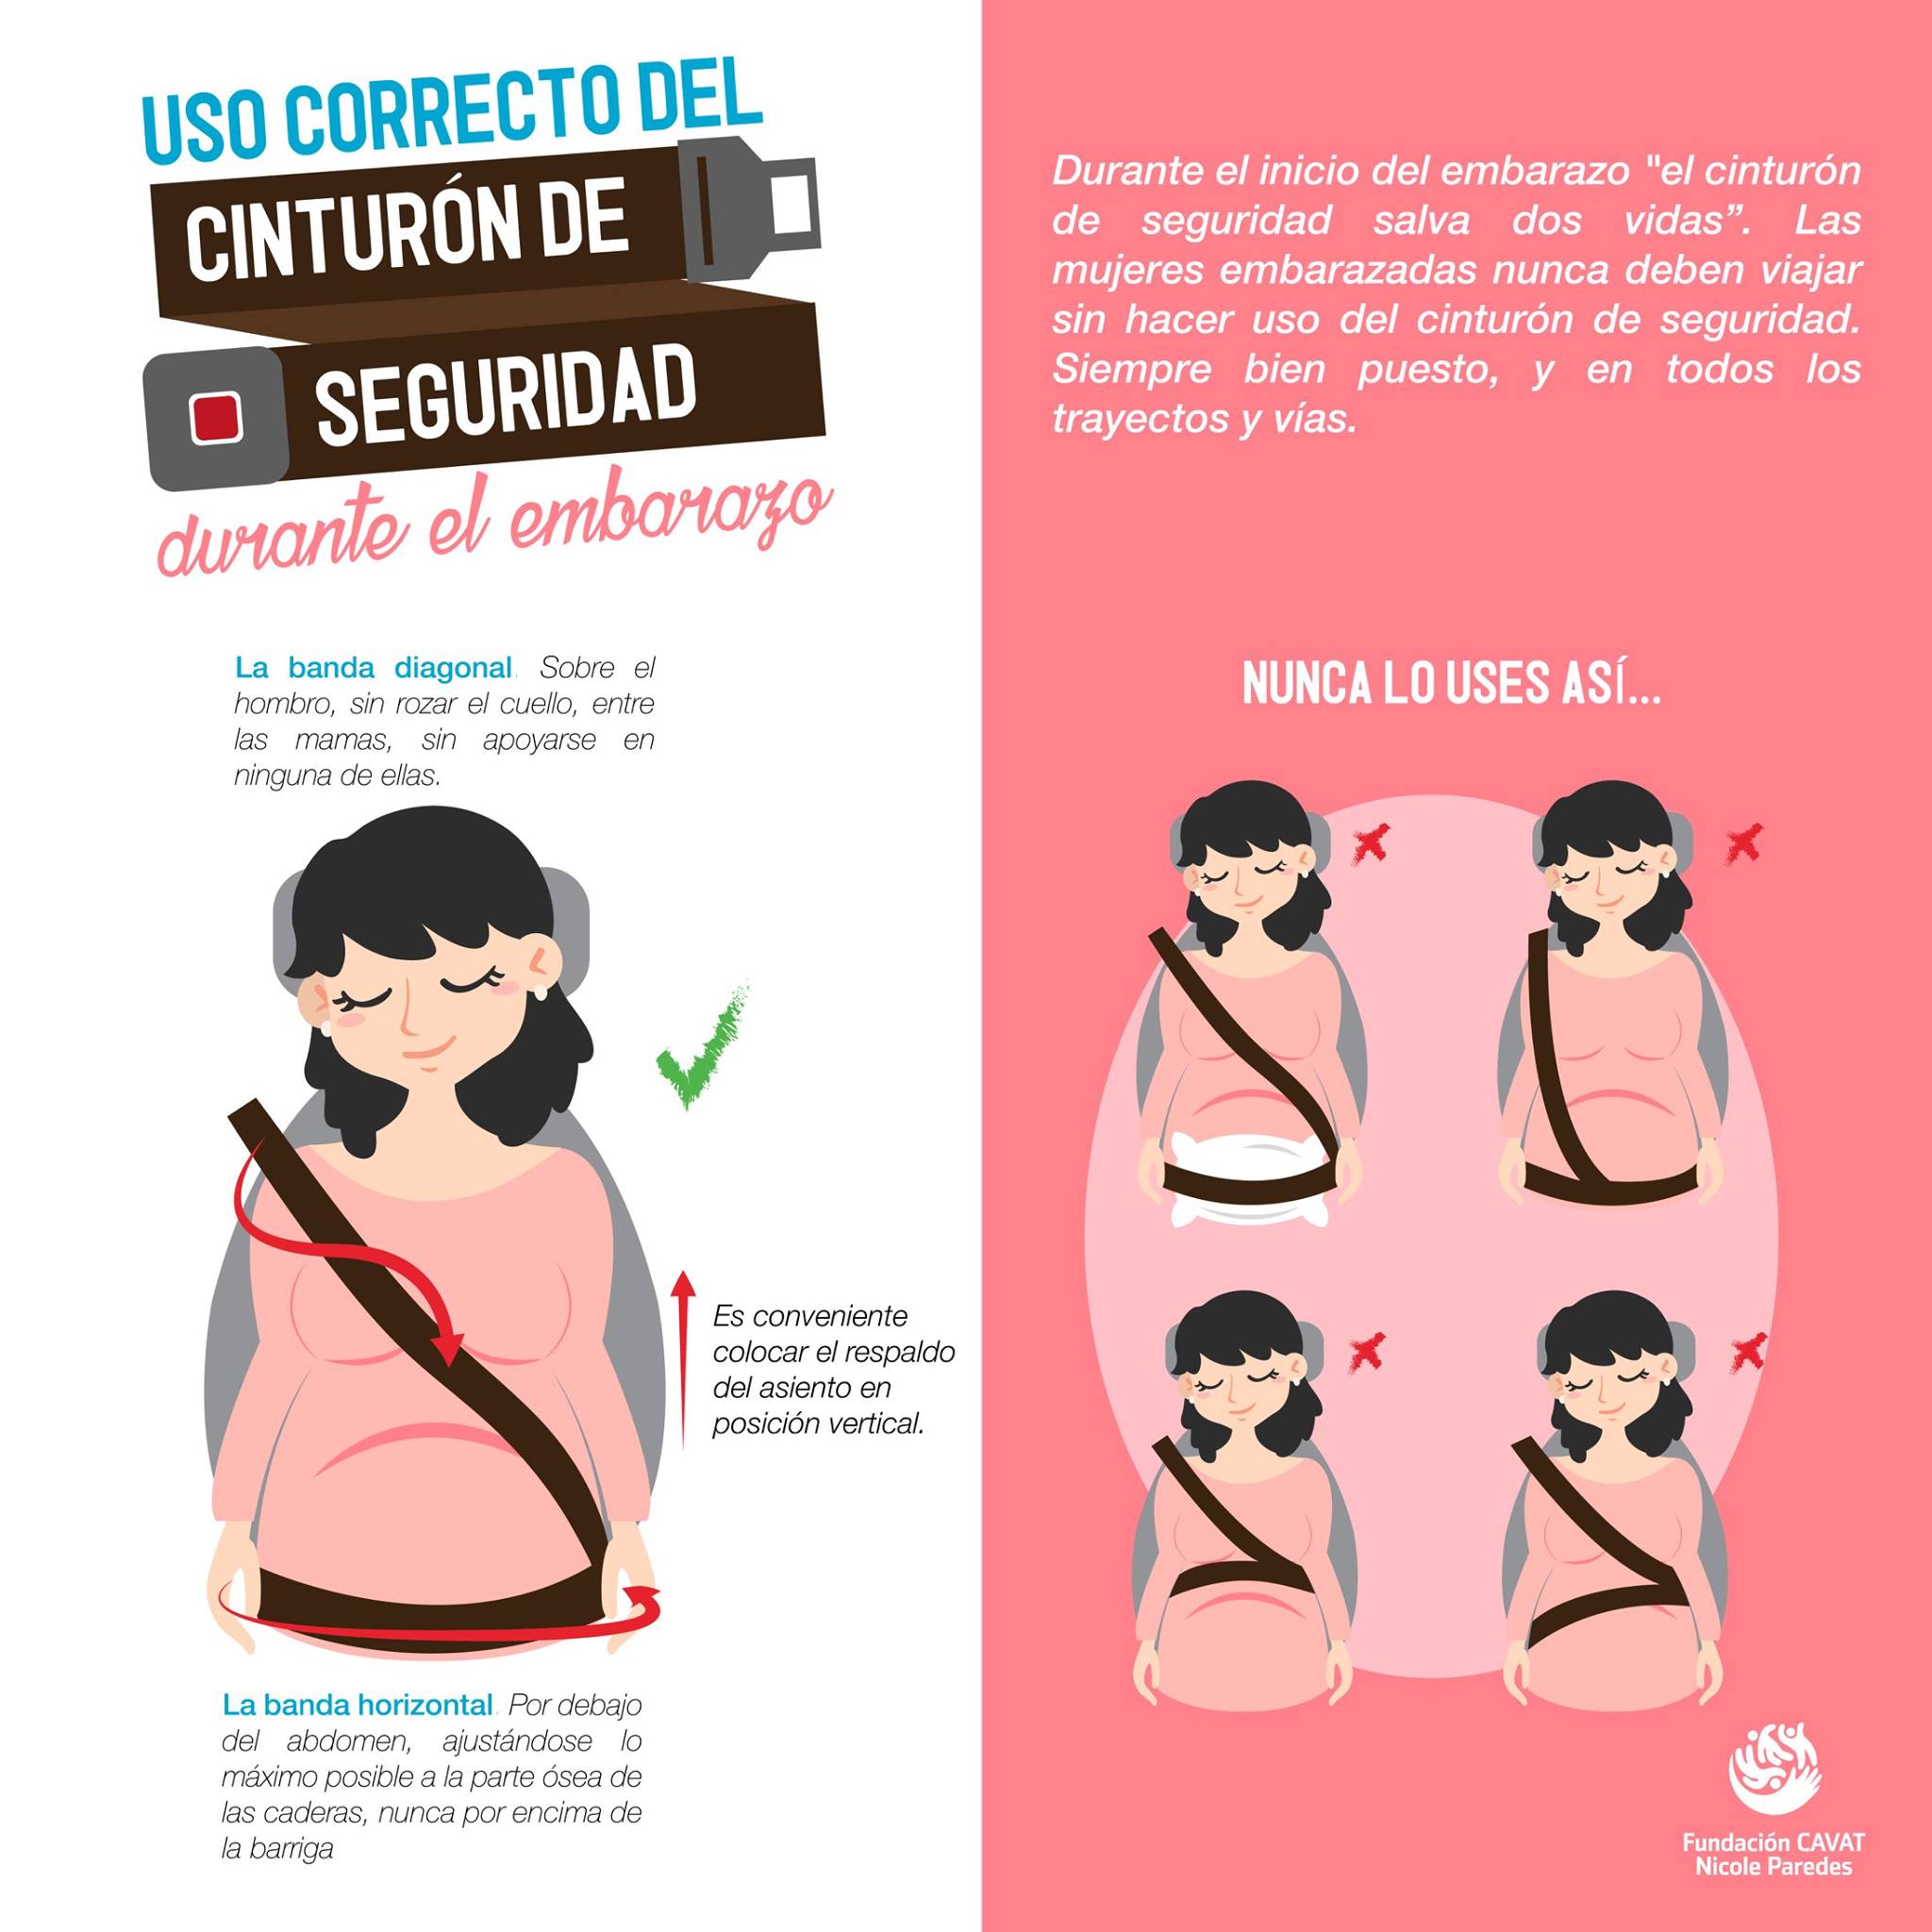 Un estudio desaconseja el uso de cinturones para embarazadas